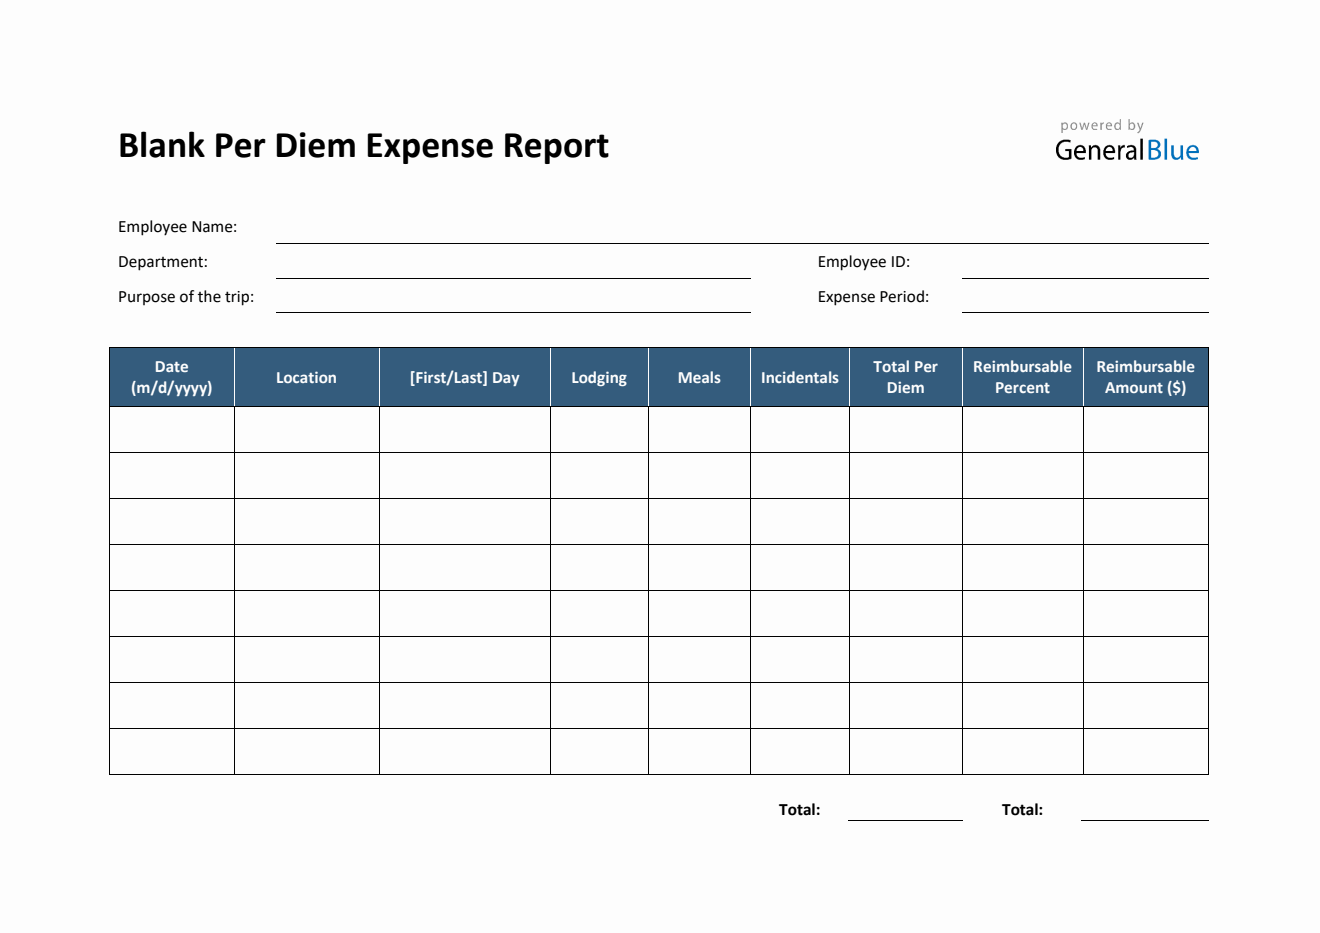 Blank Per Diem Expense Report Template in Word (Simple)